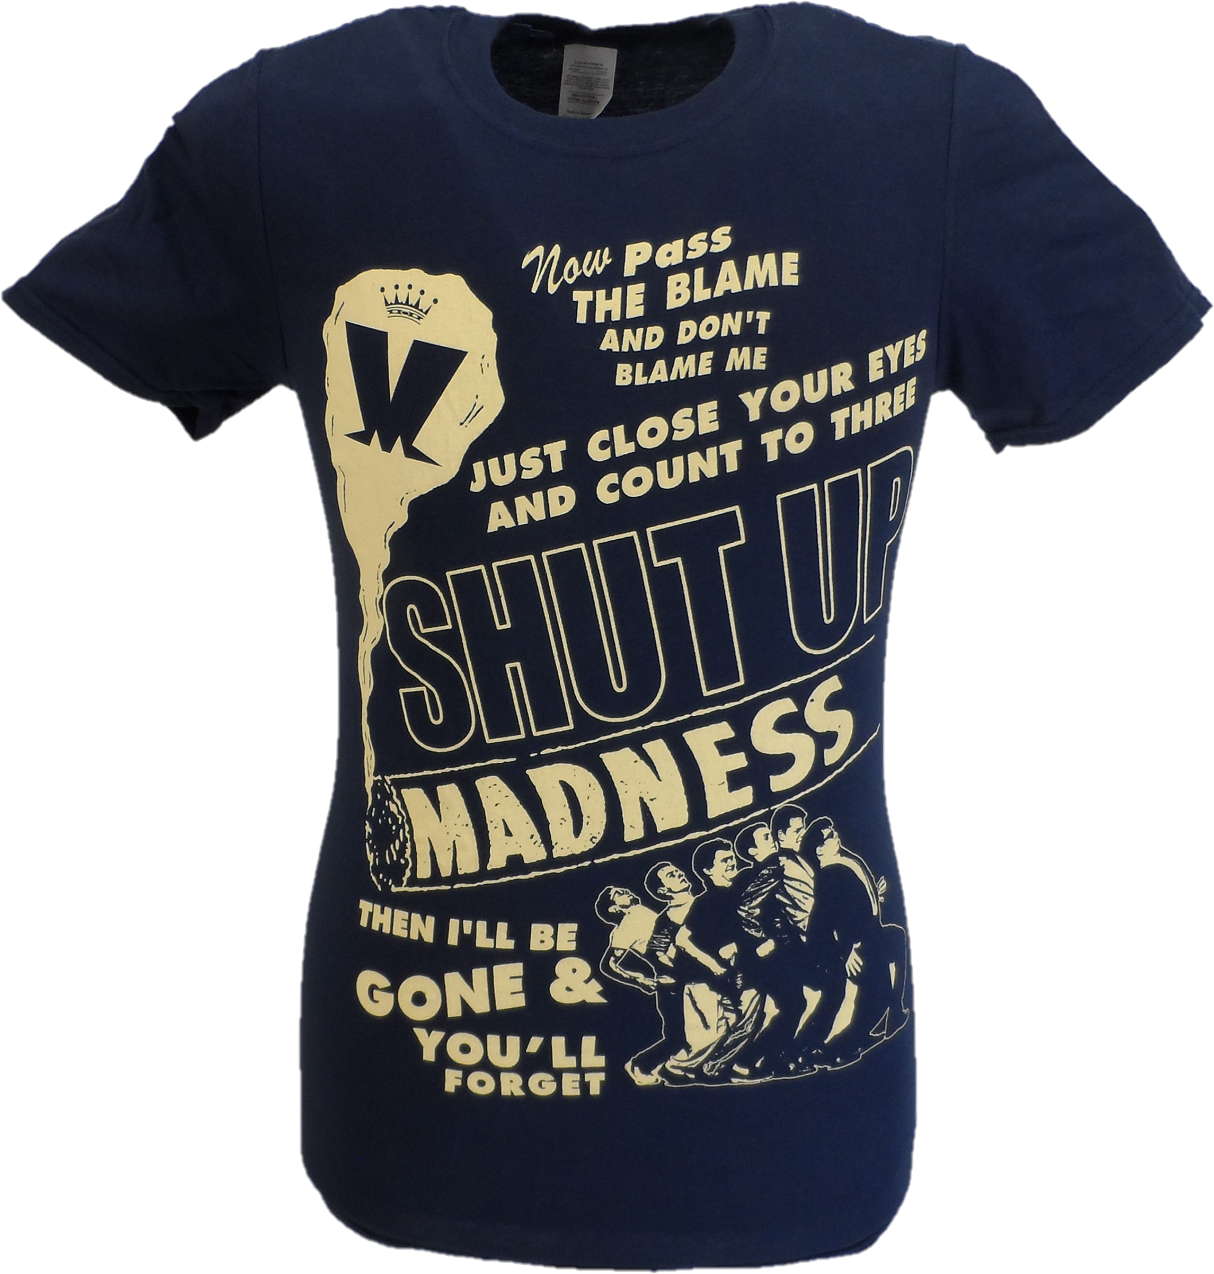 Mens Navy Blue Official Madness Shut Up T Shirt